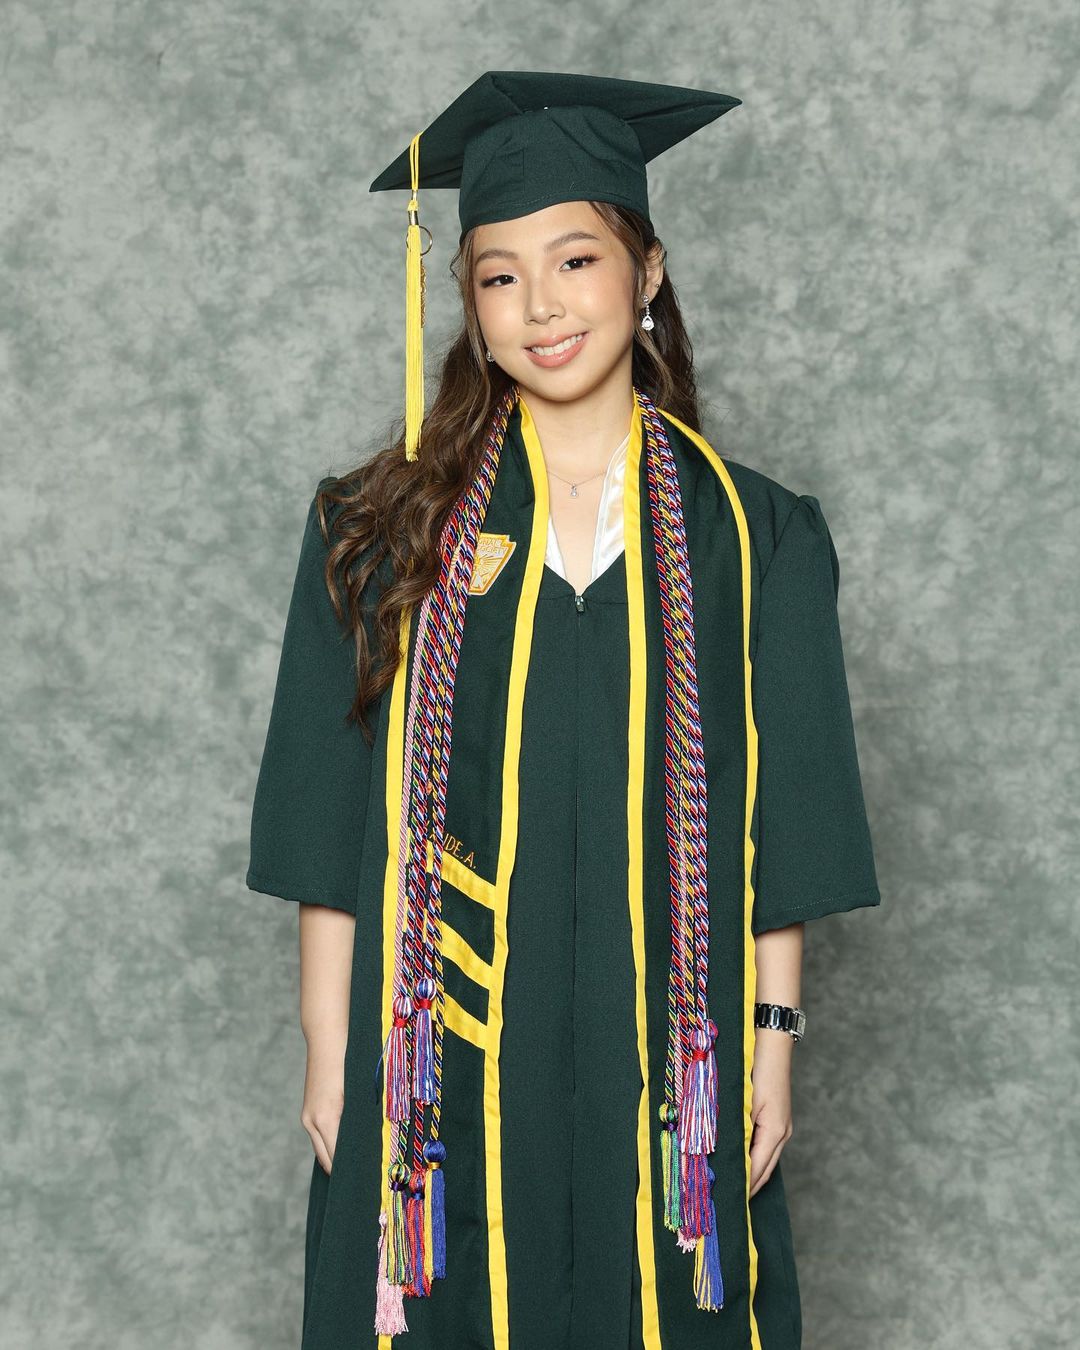 Allison Laude's graduation picture